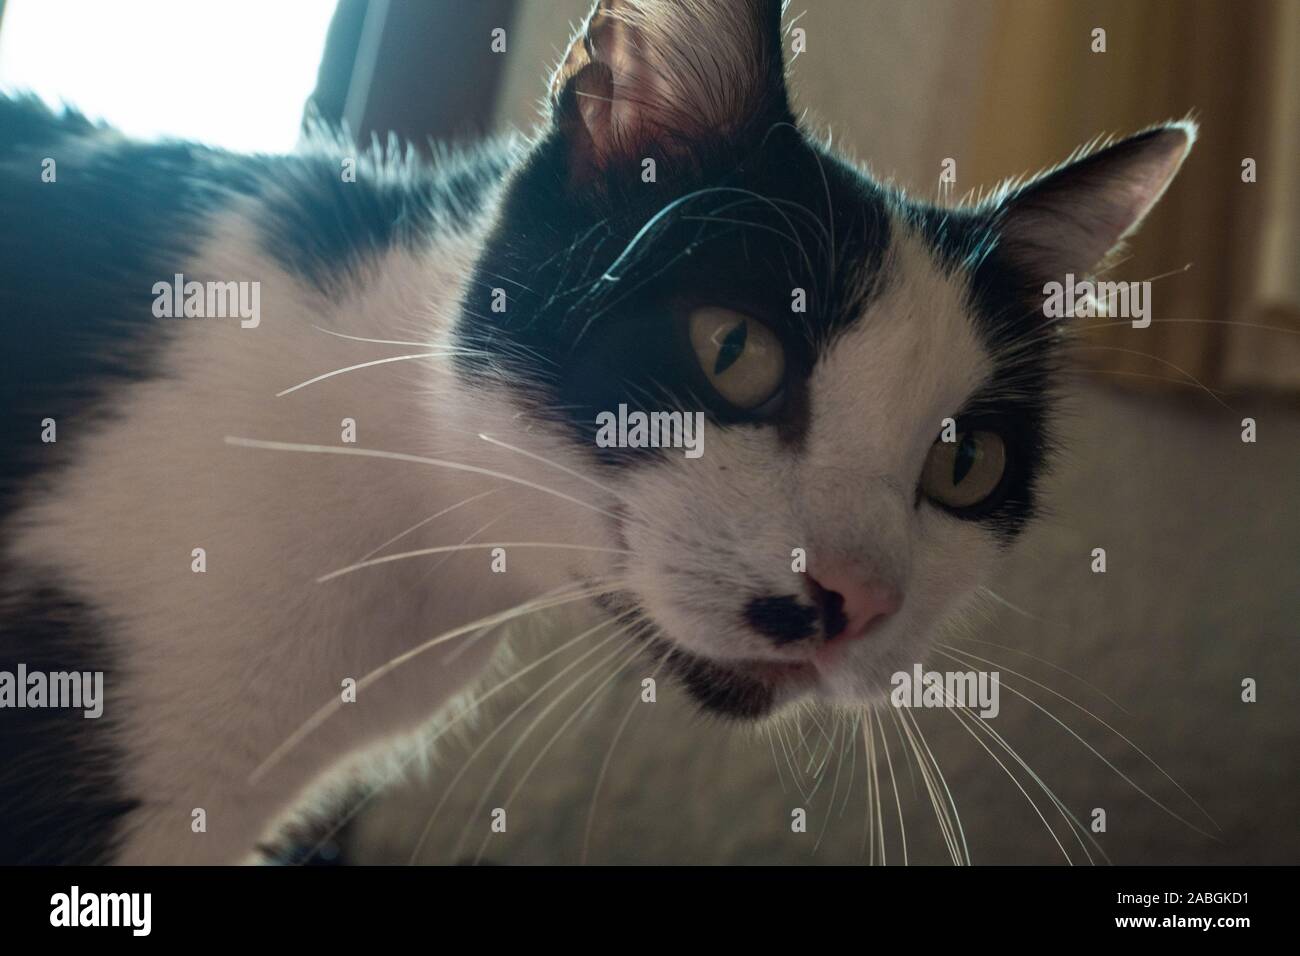 closeup of a cat face Stock Photo